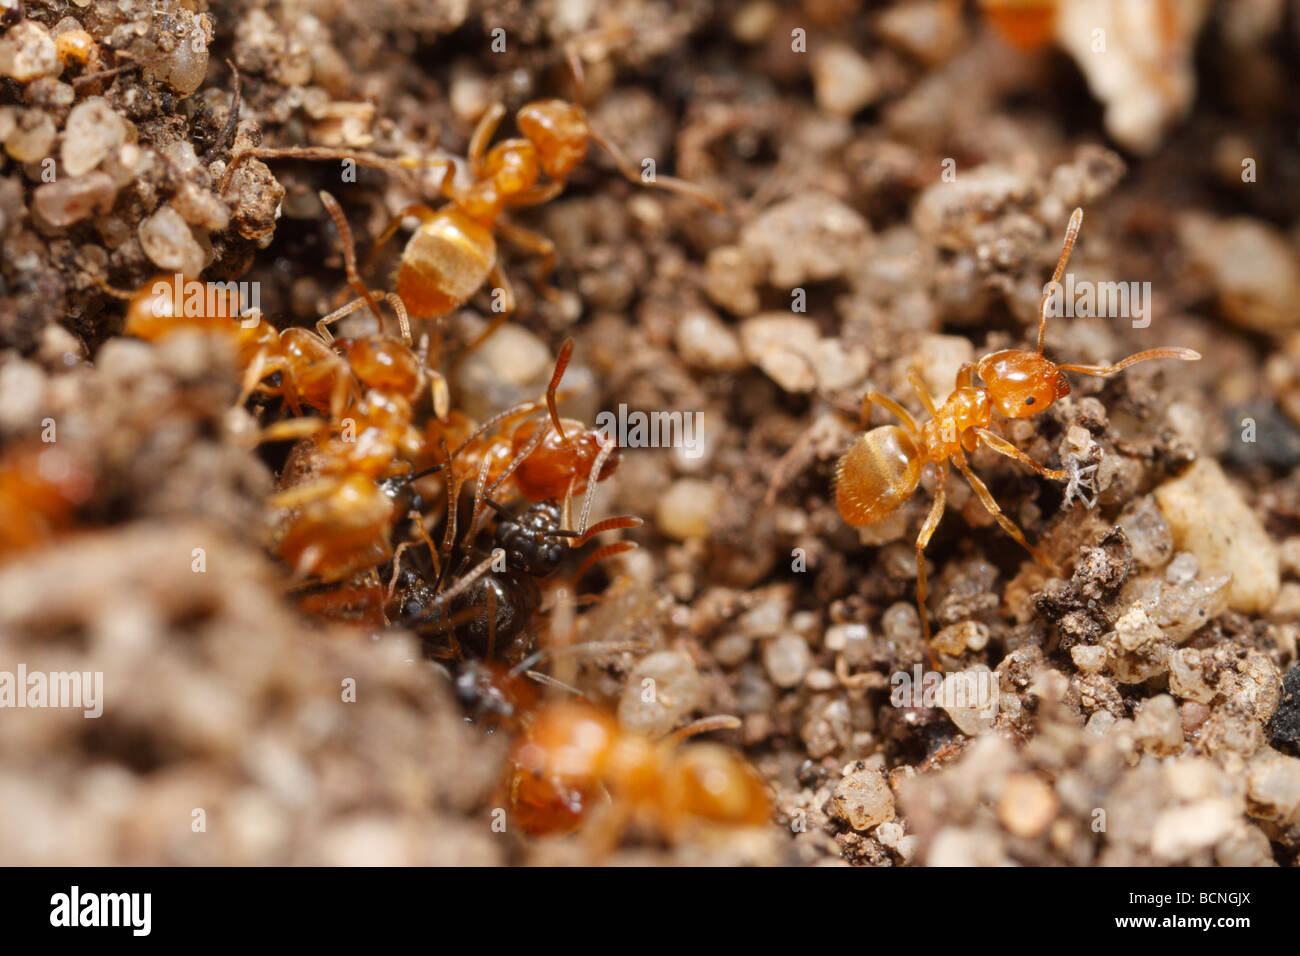 Lasius flavus, giallo Prato formiche, preparare il nido d'ingresso per sciamare. Lavoratori e alates può essere visto. Foto Stock